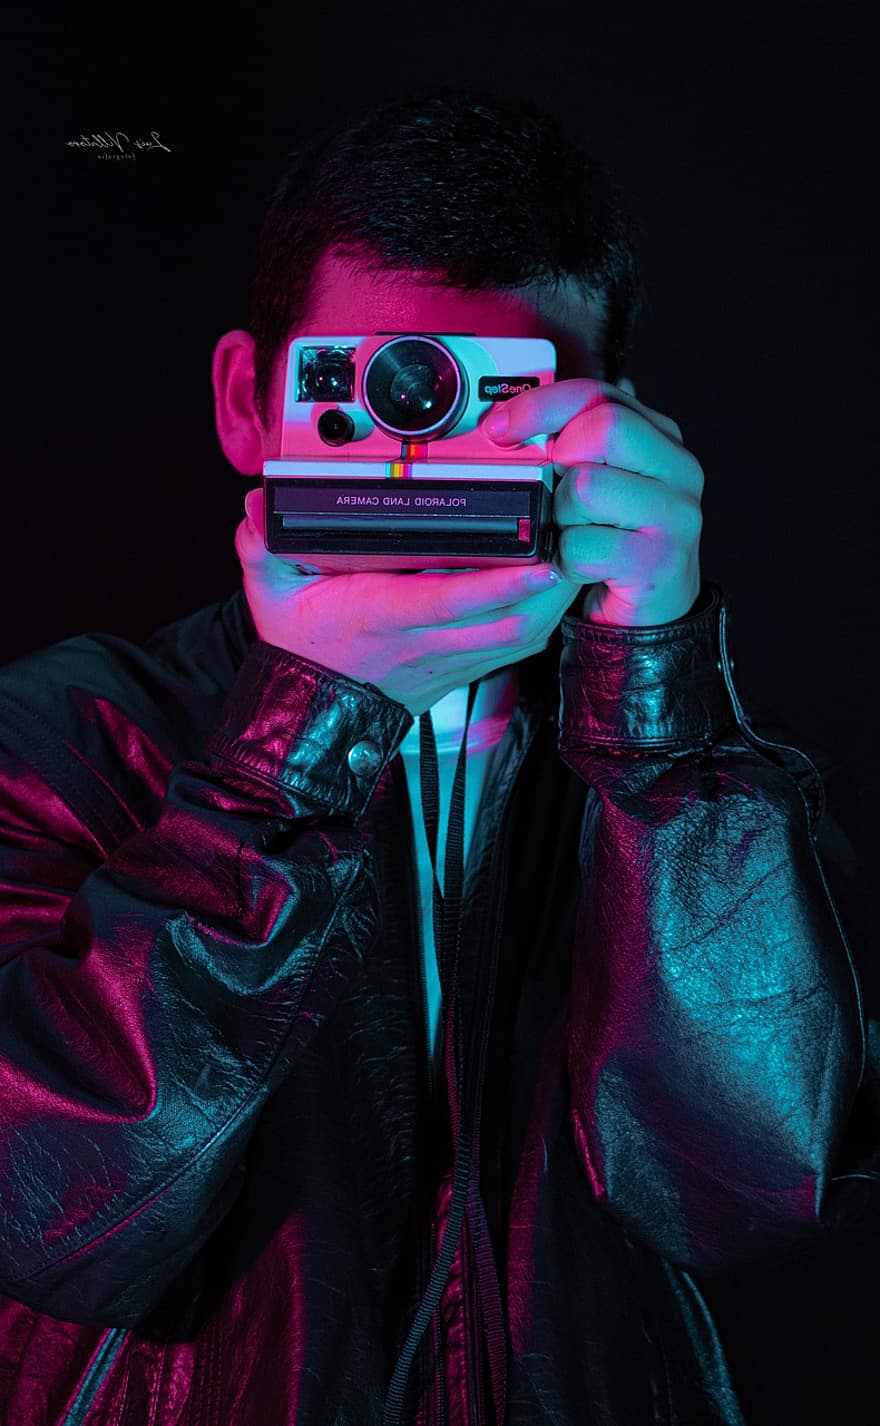 homem, Câmera, polaroid, capturar, câmera Polaroid, tirar fotos, fotografia, fotógrafo, retrato, homem jovem